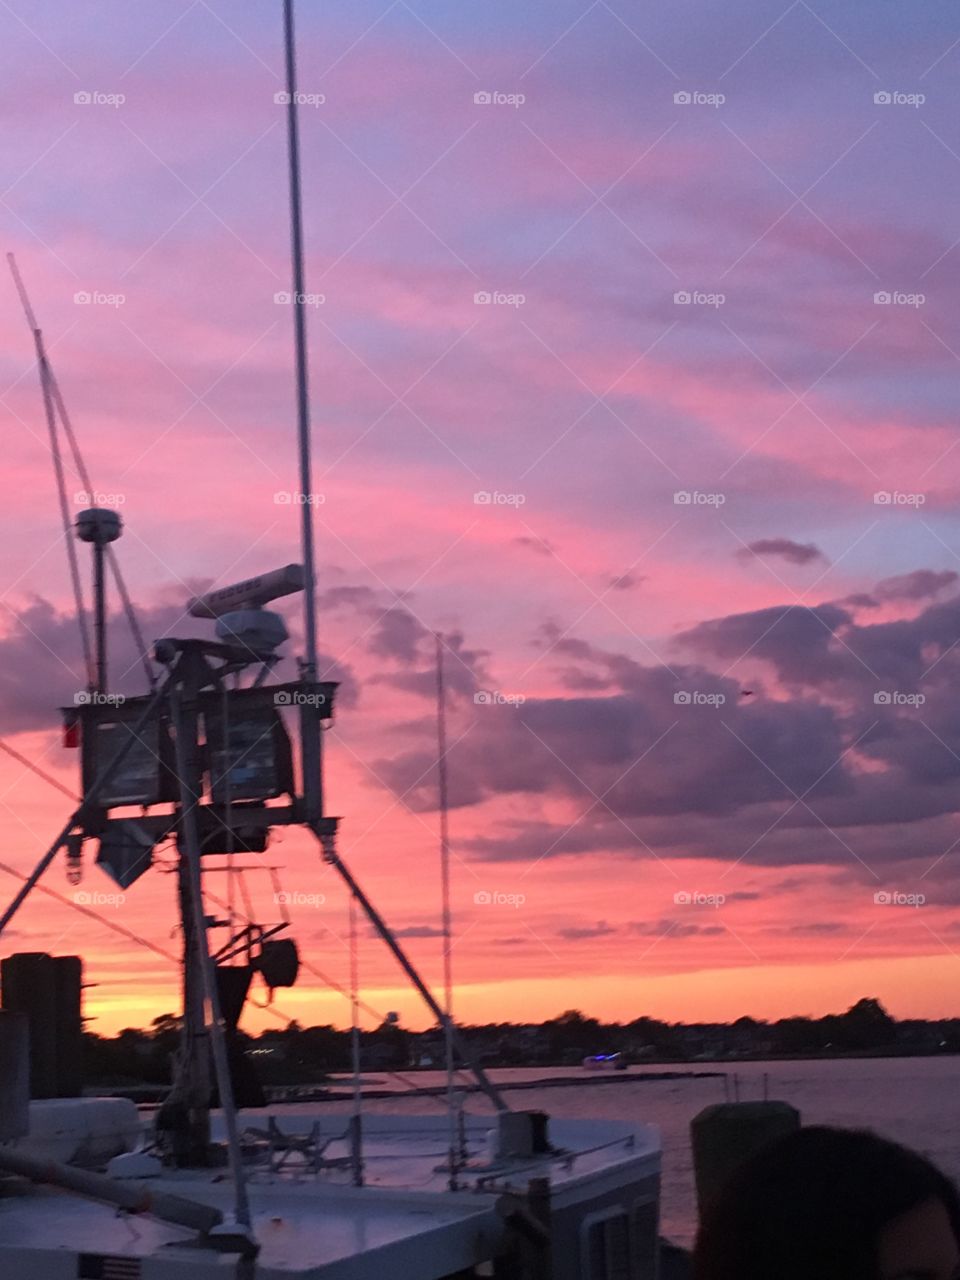 Summer sunset on the marina 